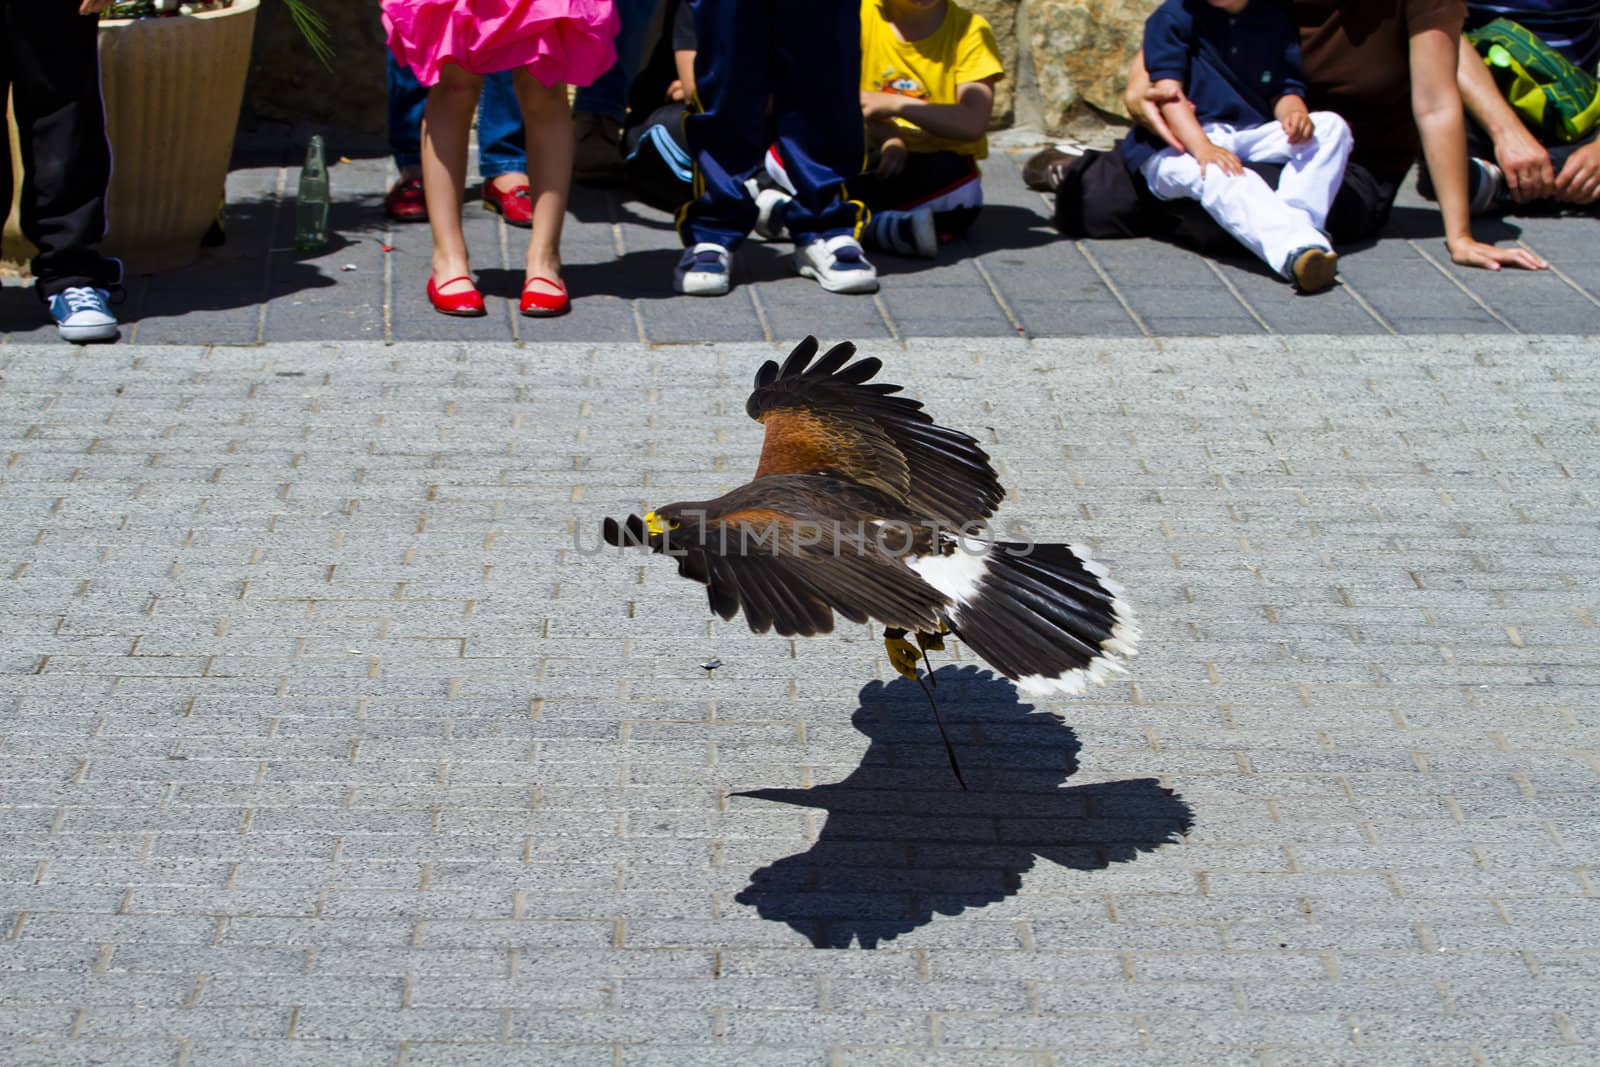 low-flying eagle by FernandoCortes